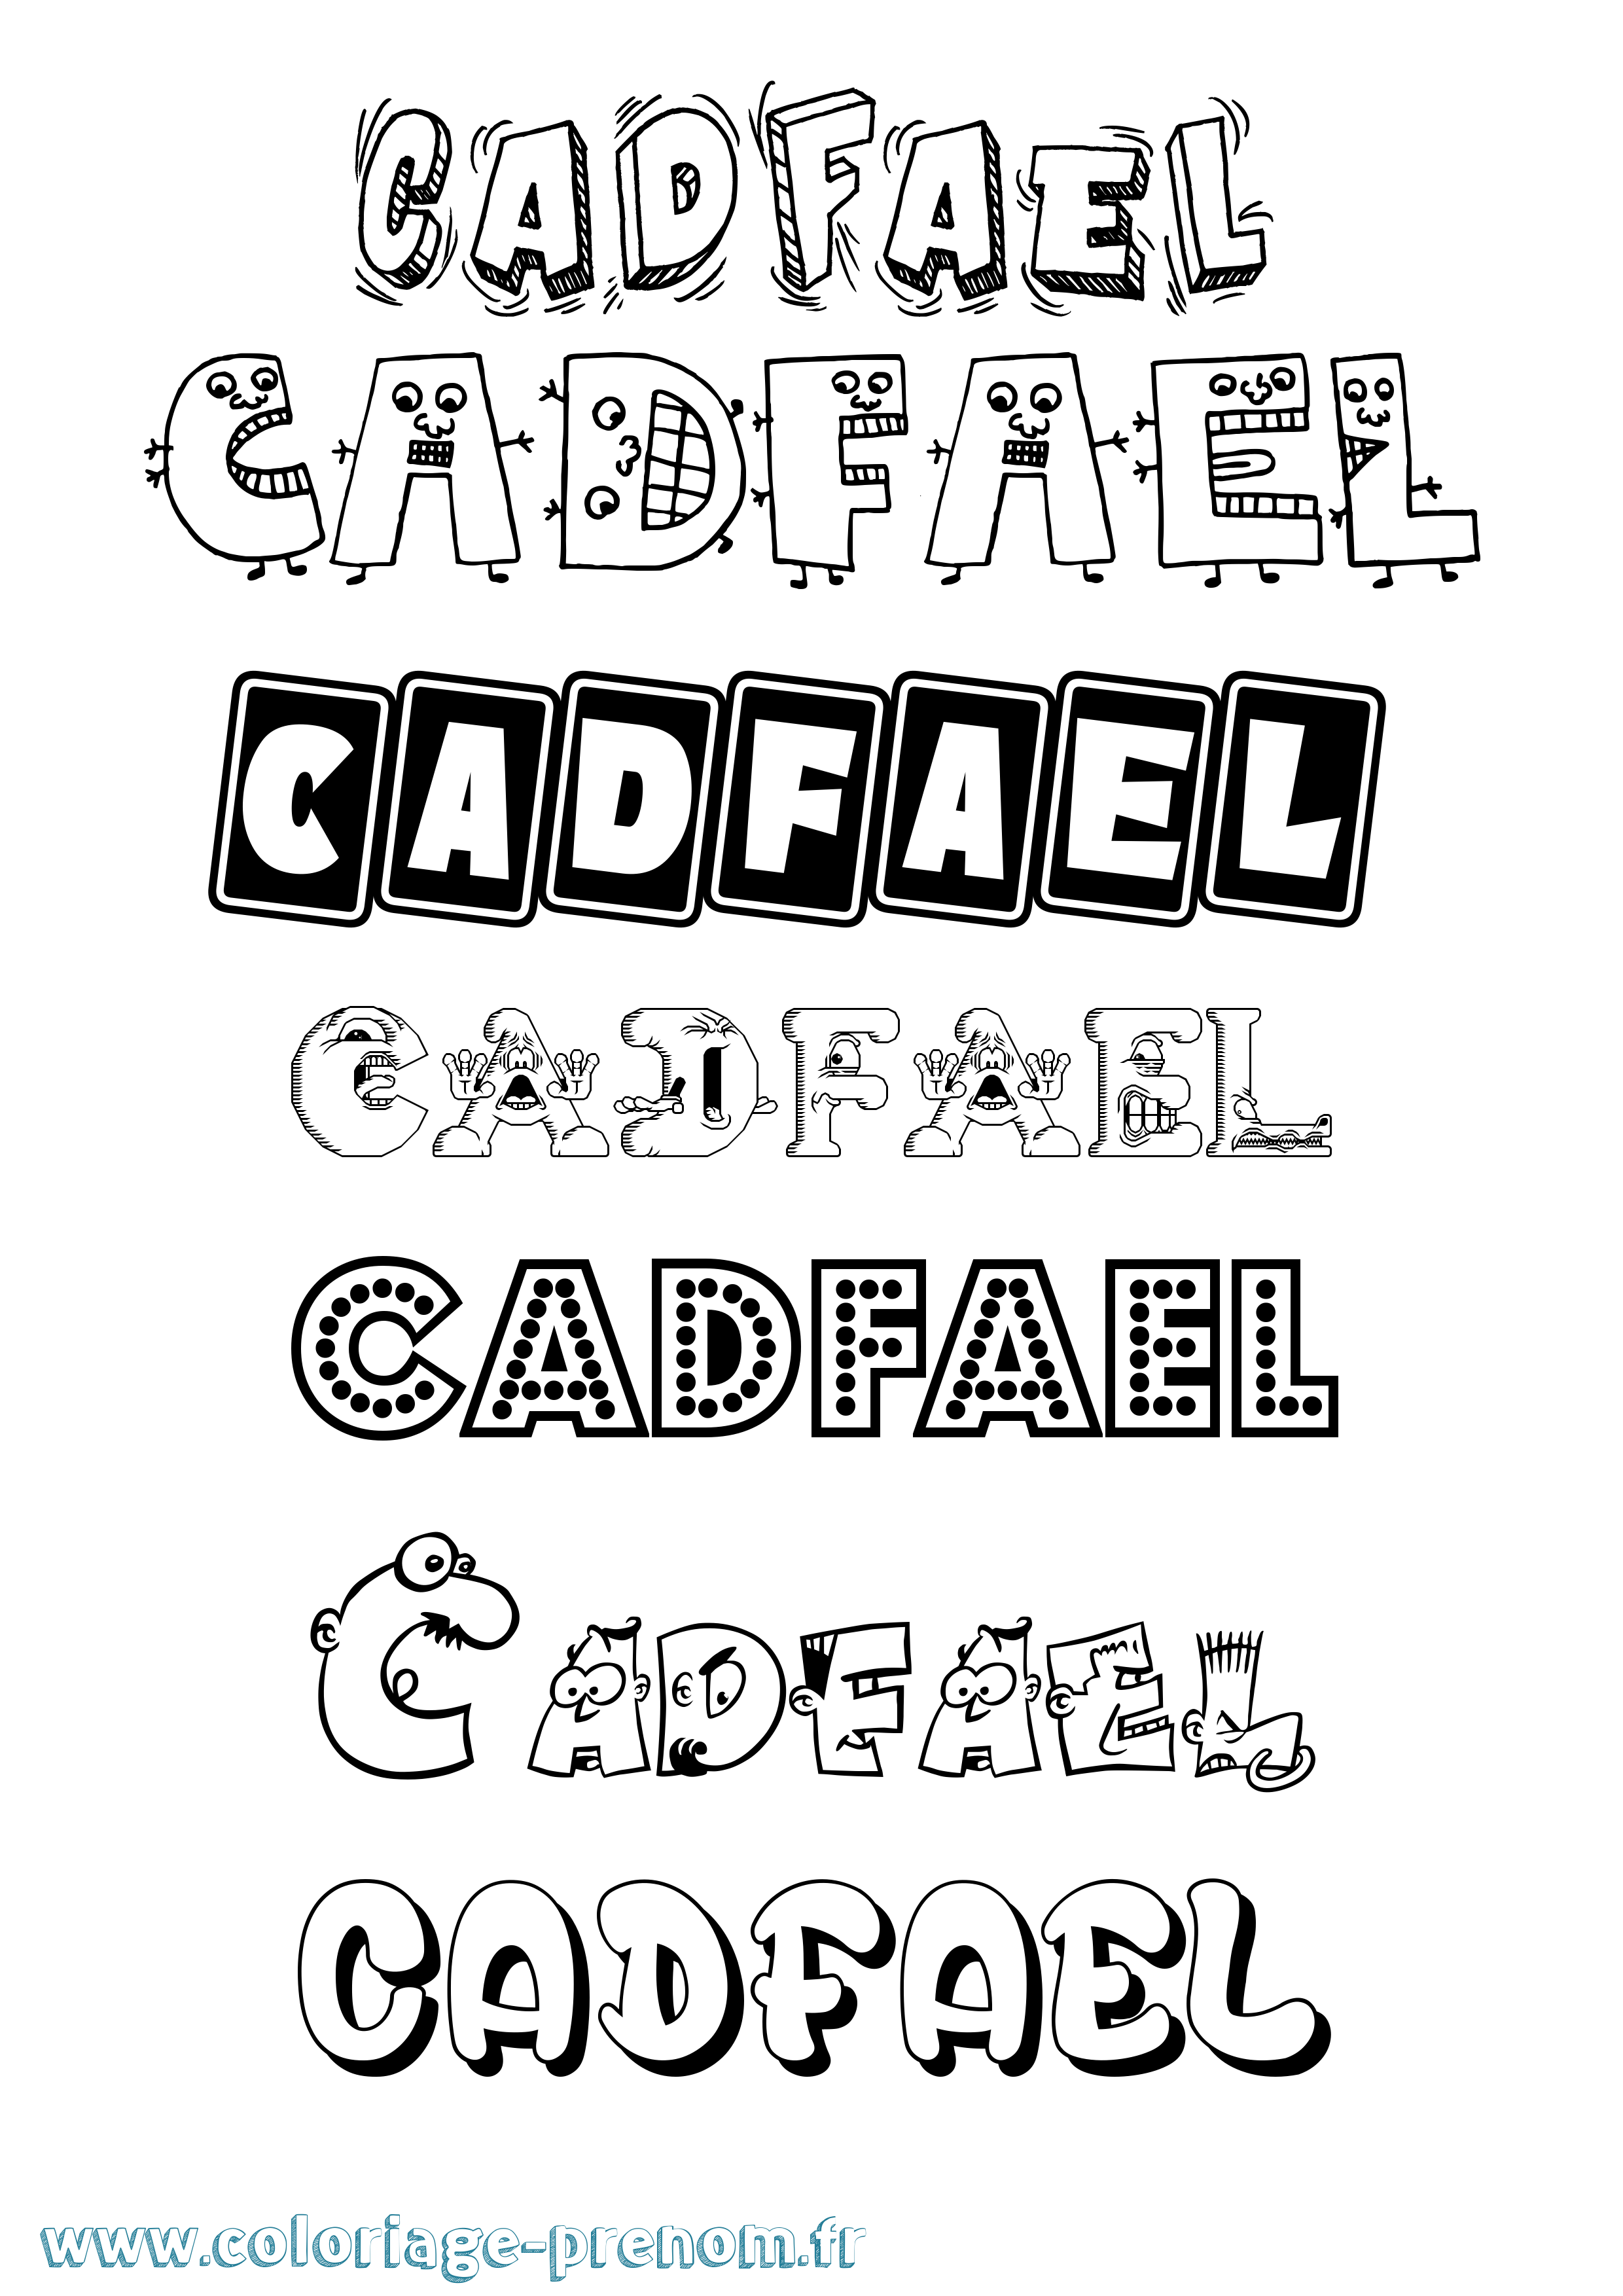 Coloriage prénom Cadfael Fun